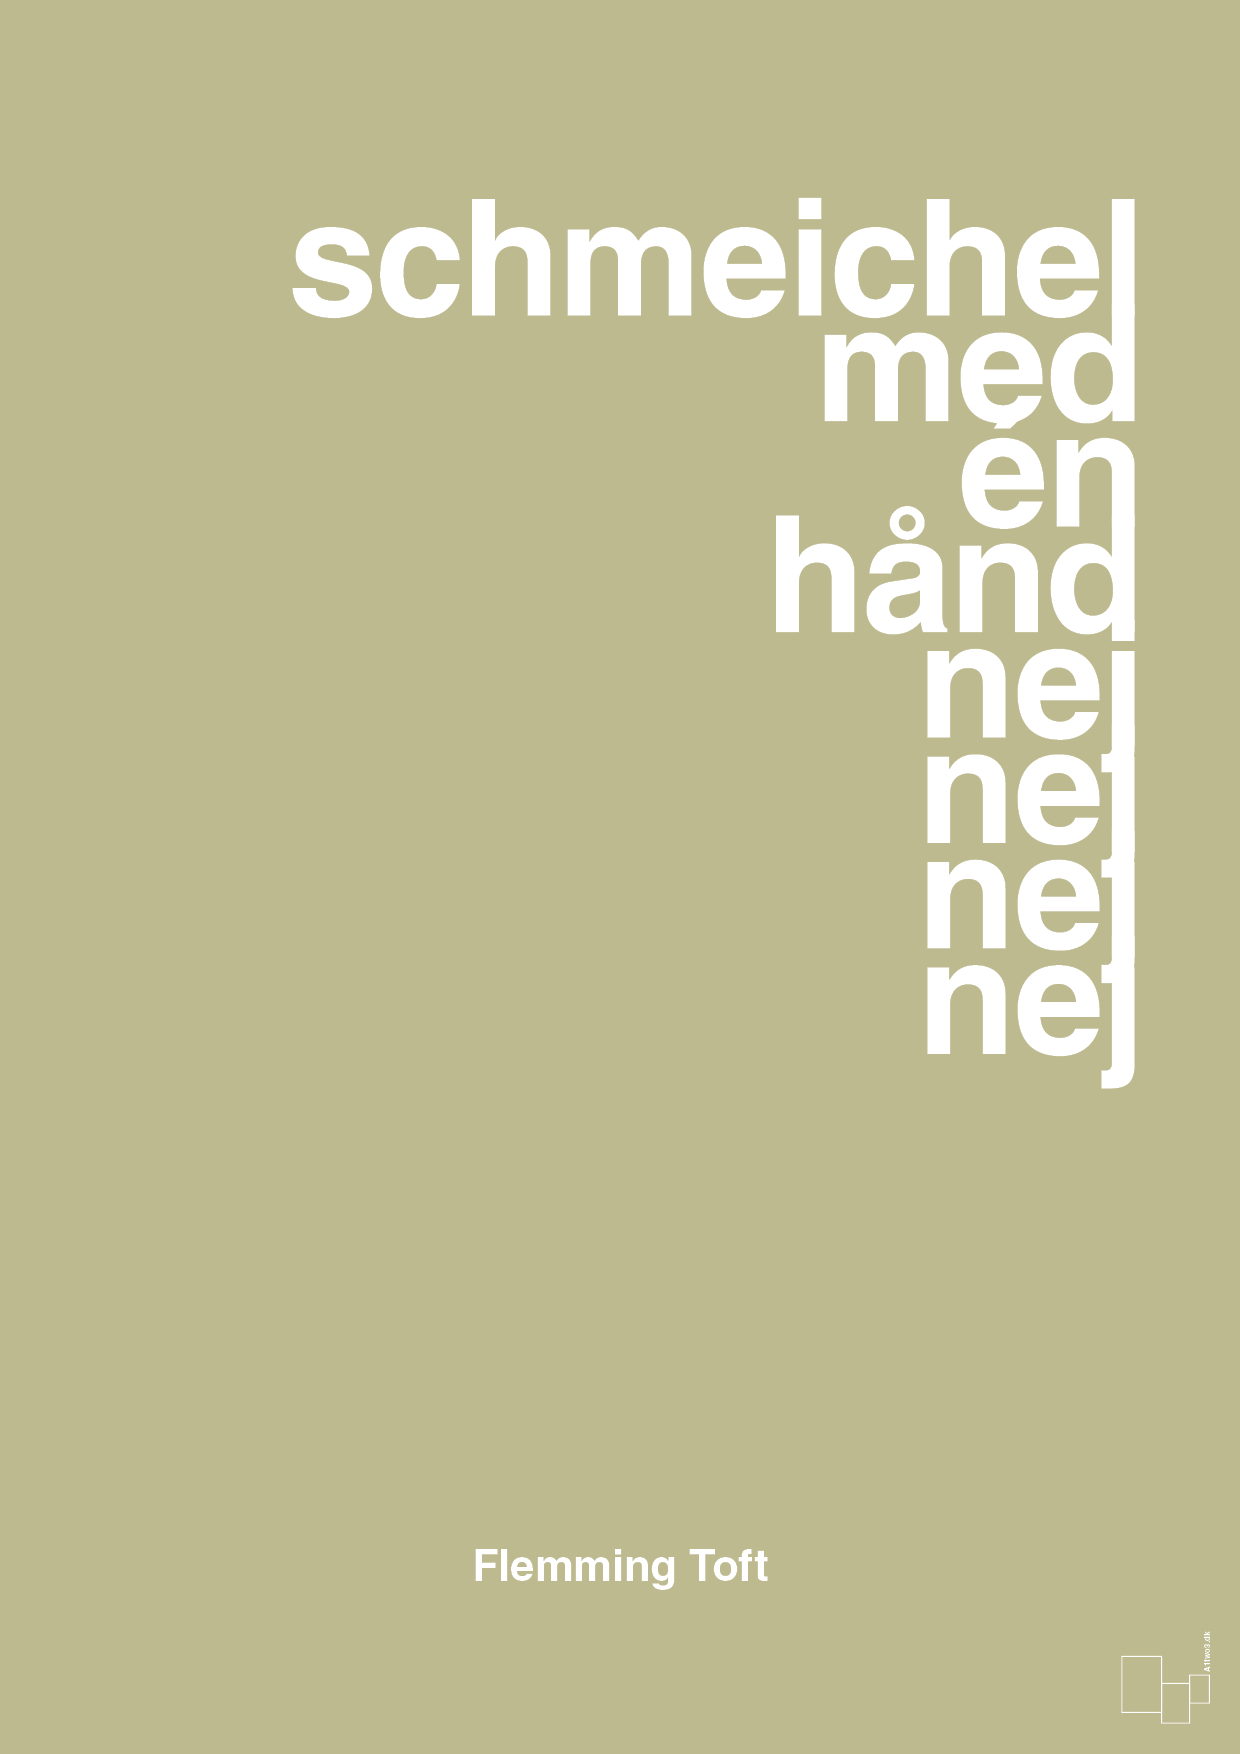 schmeichel med én hånd nej nej nej nej - Plakat med Citater i Back to Nature